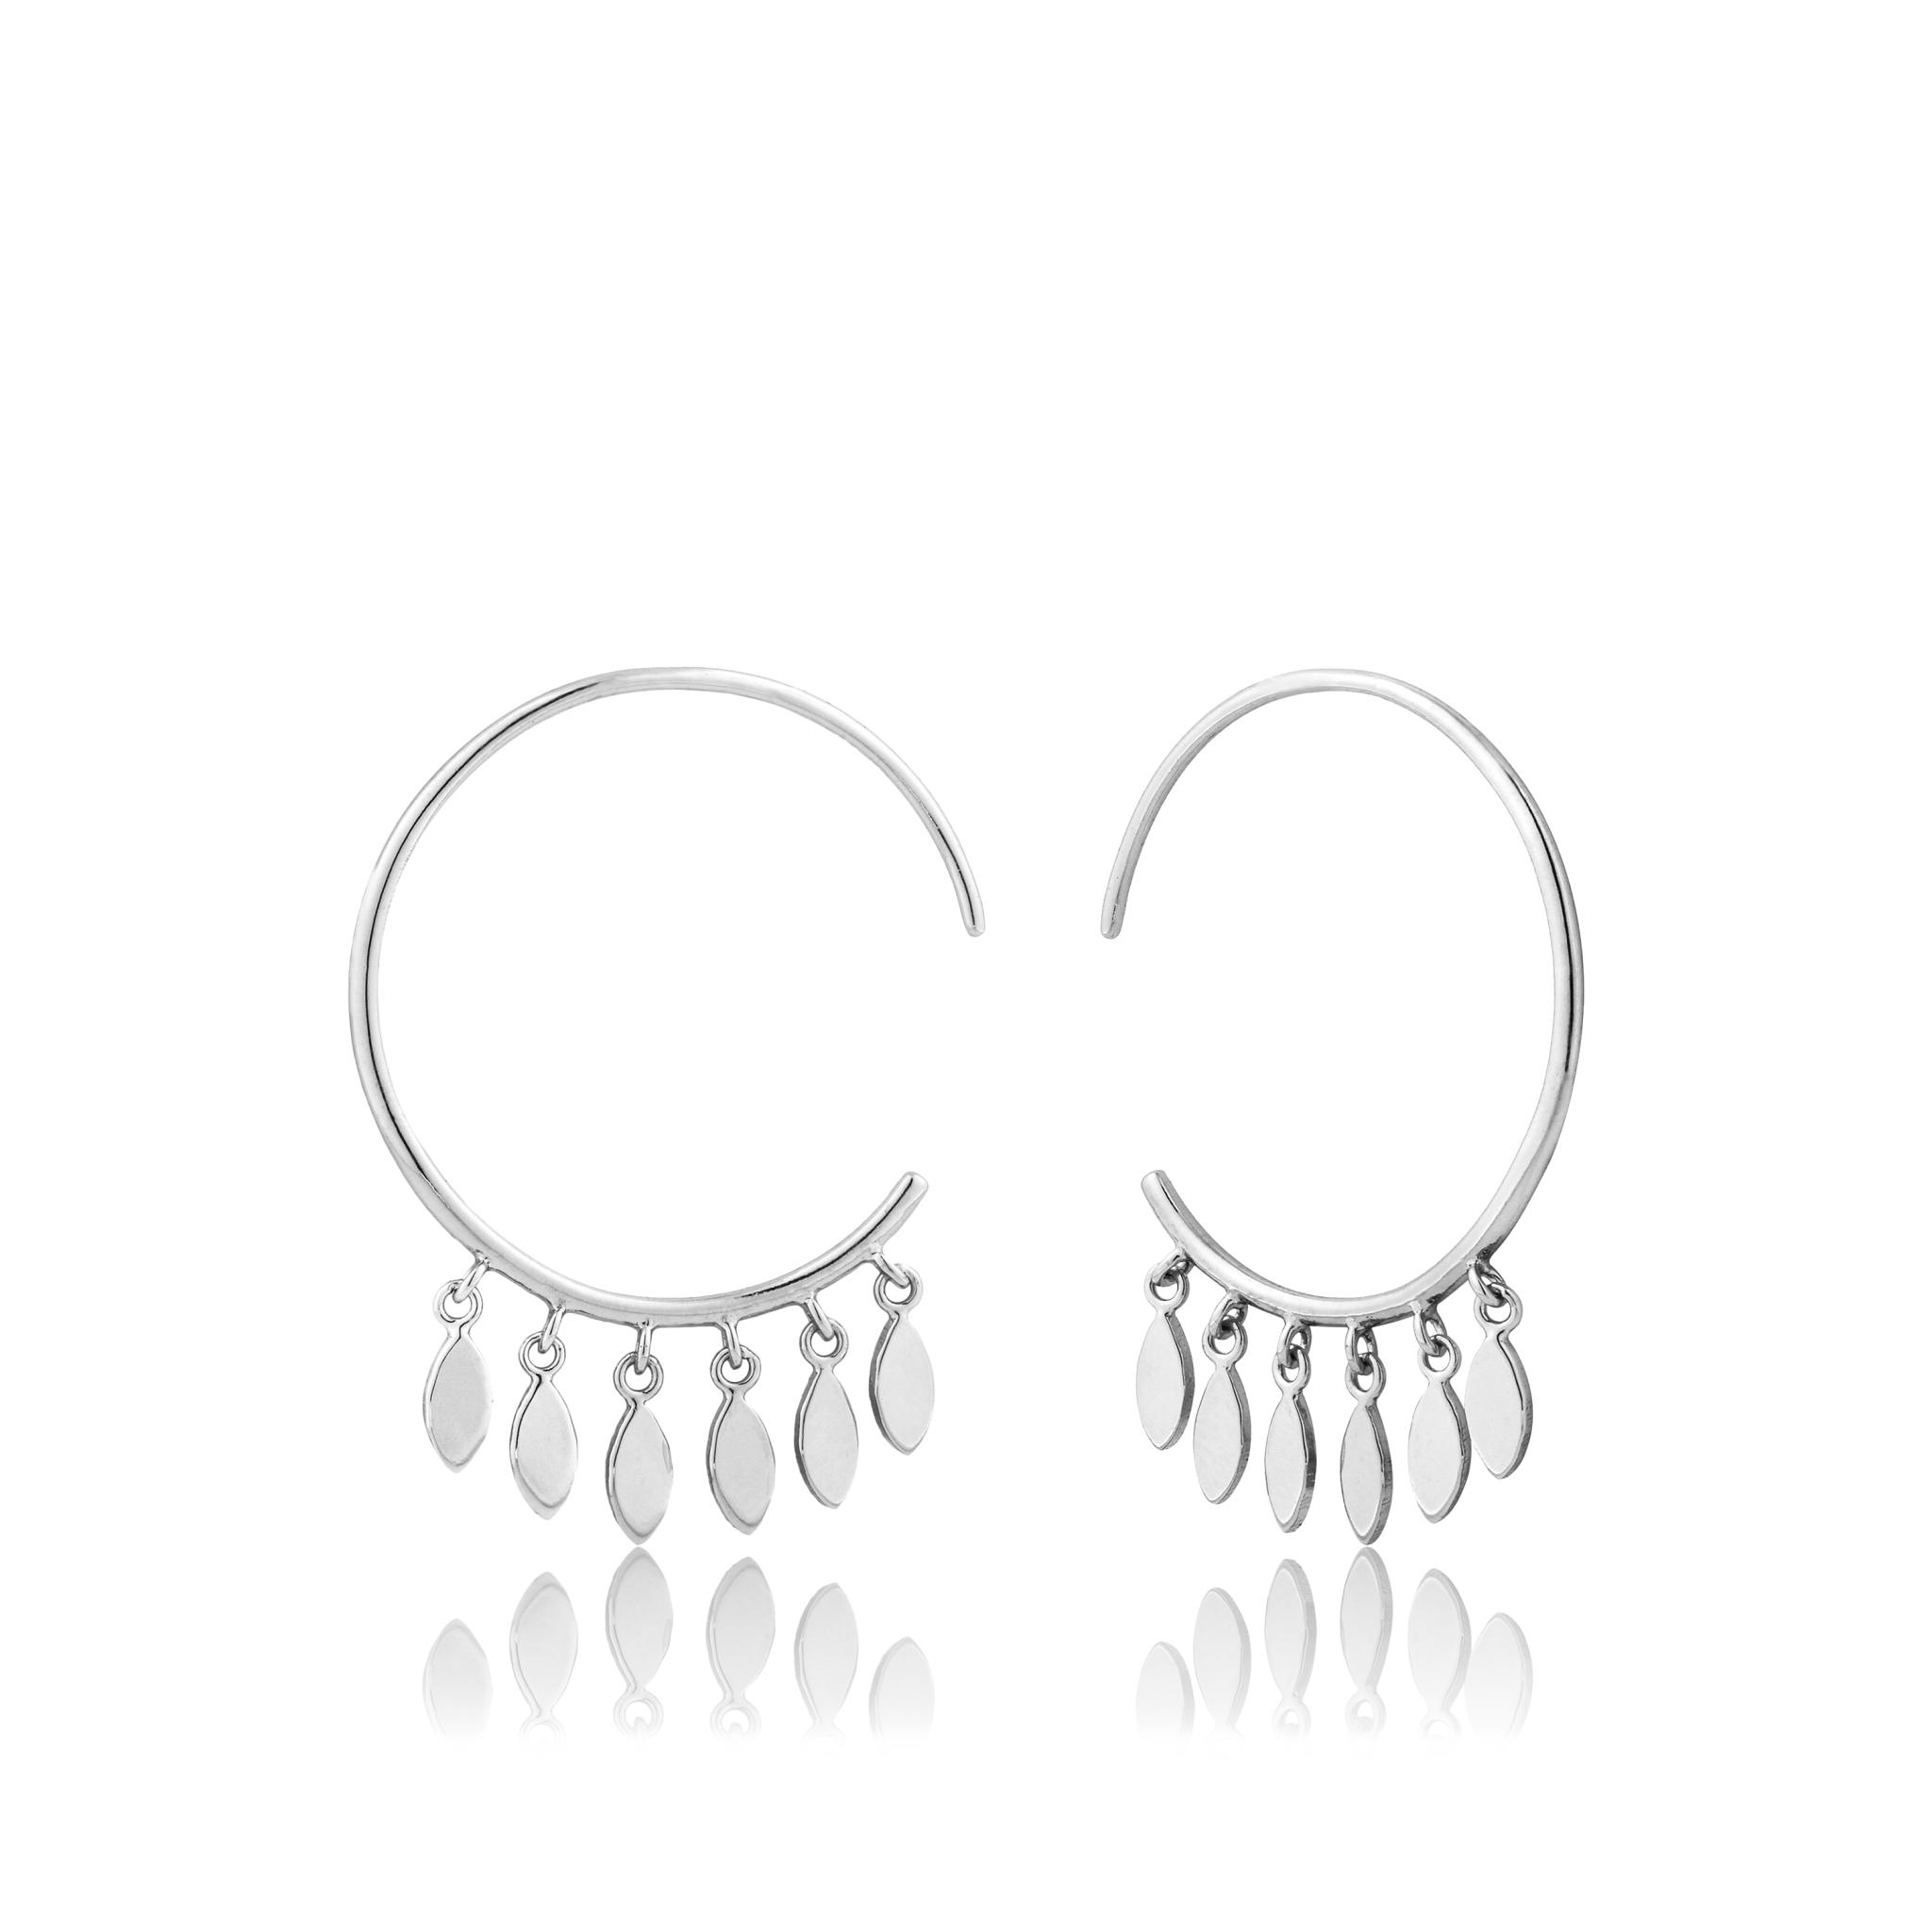 Ania Haie Multi Drop Dainty Hoop Earrings Sterling Silver